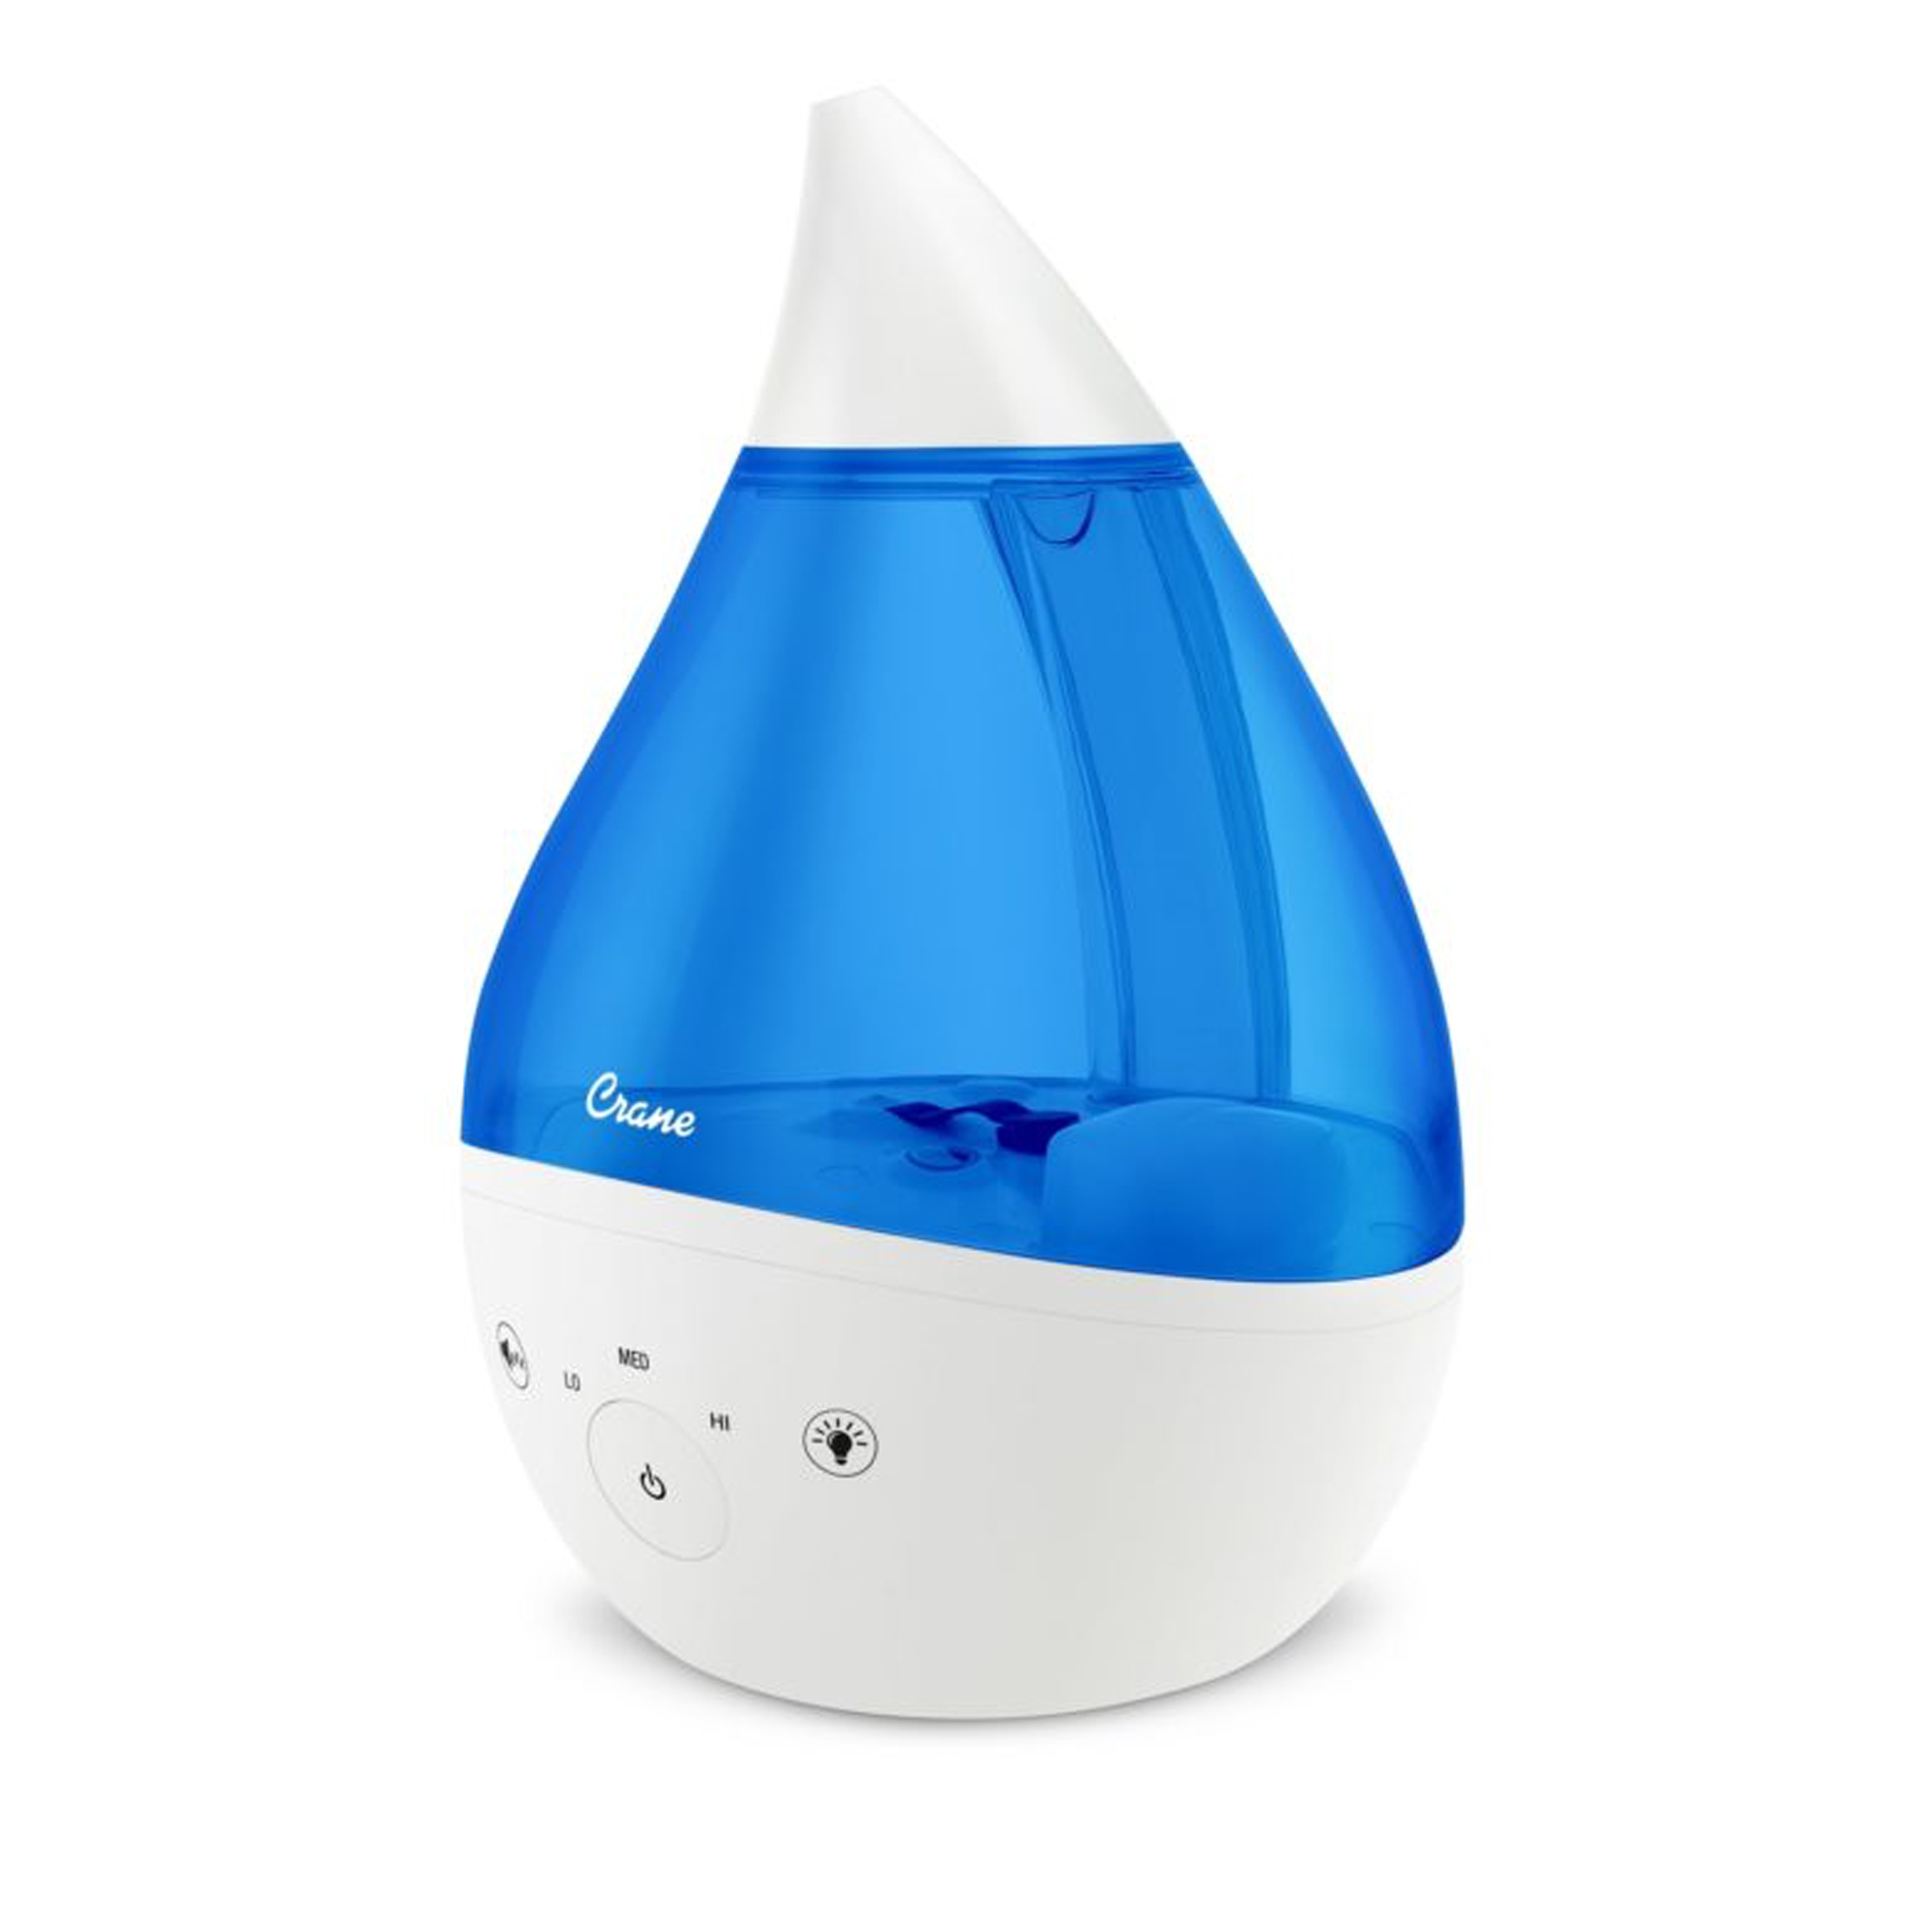 Hamilton Beach TrueAir® Cool Mist Humidifier, White - 04700